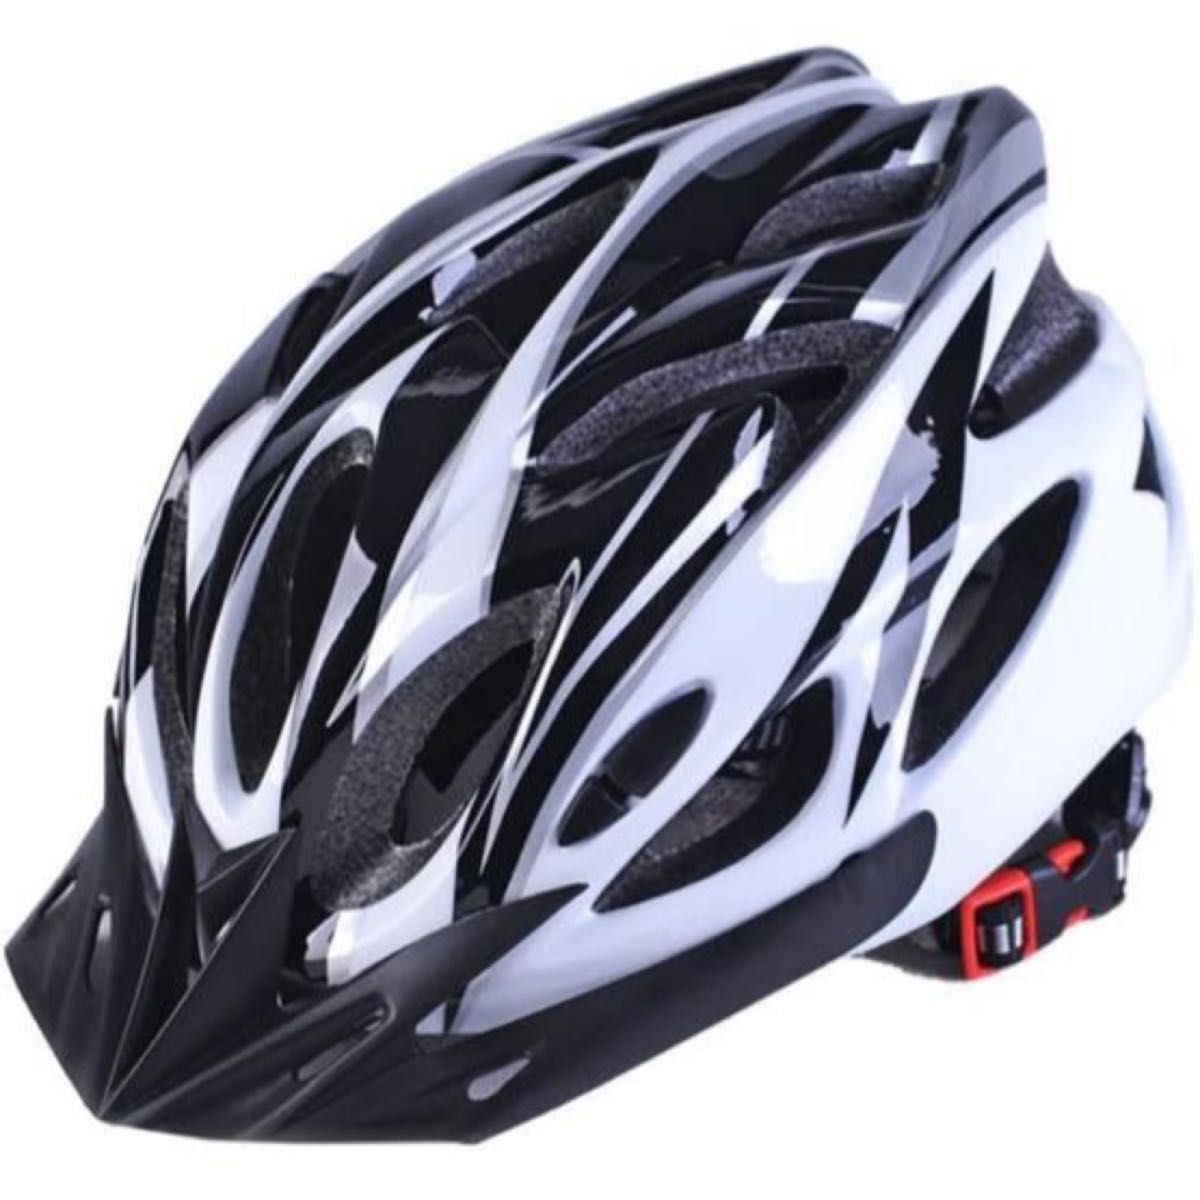 新品未使用超軽量 自転車用ヘルメット 男性 女性 学生 頭のサイズ 56-61CM  色 ：ブラック×ホワイト